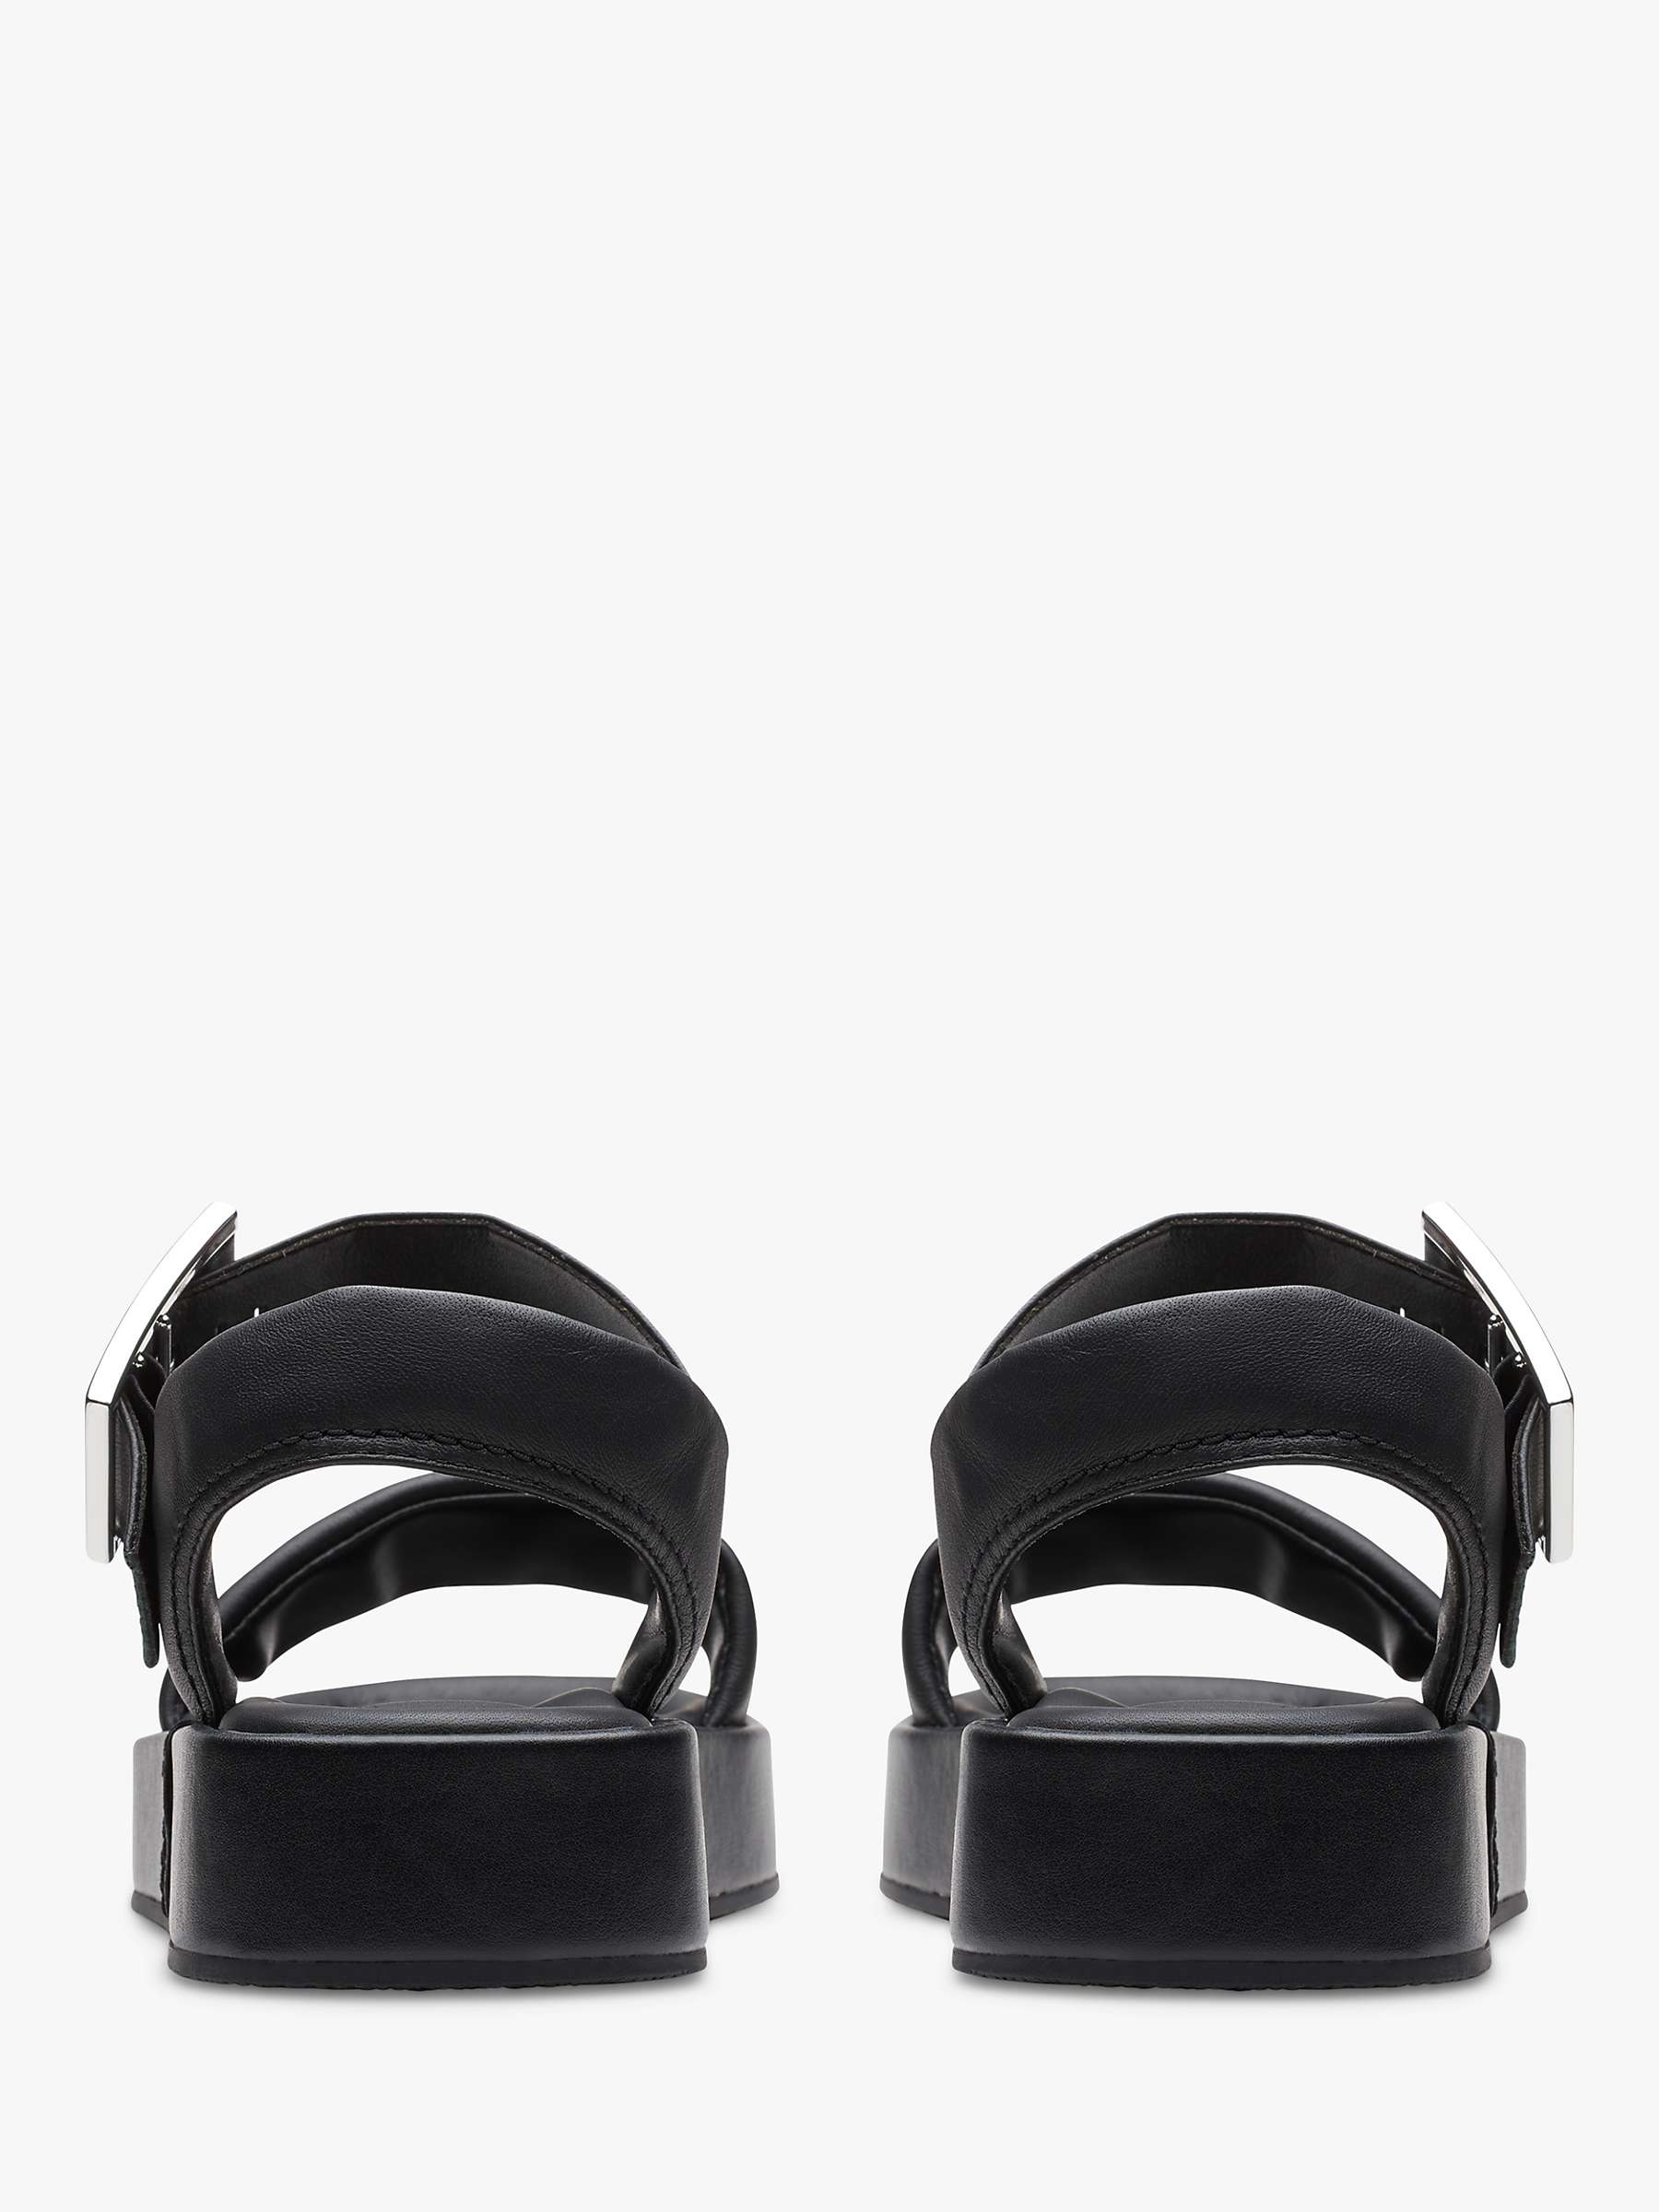 Buy Clarks Alda Leather Strap Sandals, Black Online at johnlewis.com